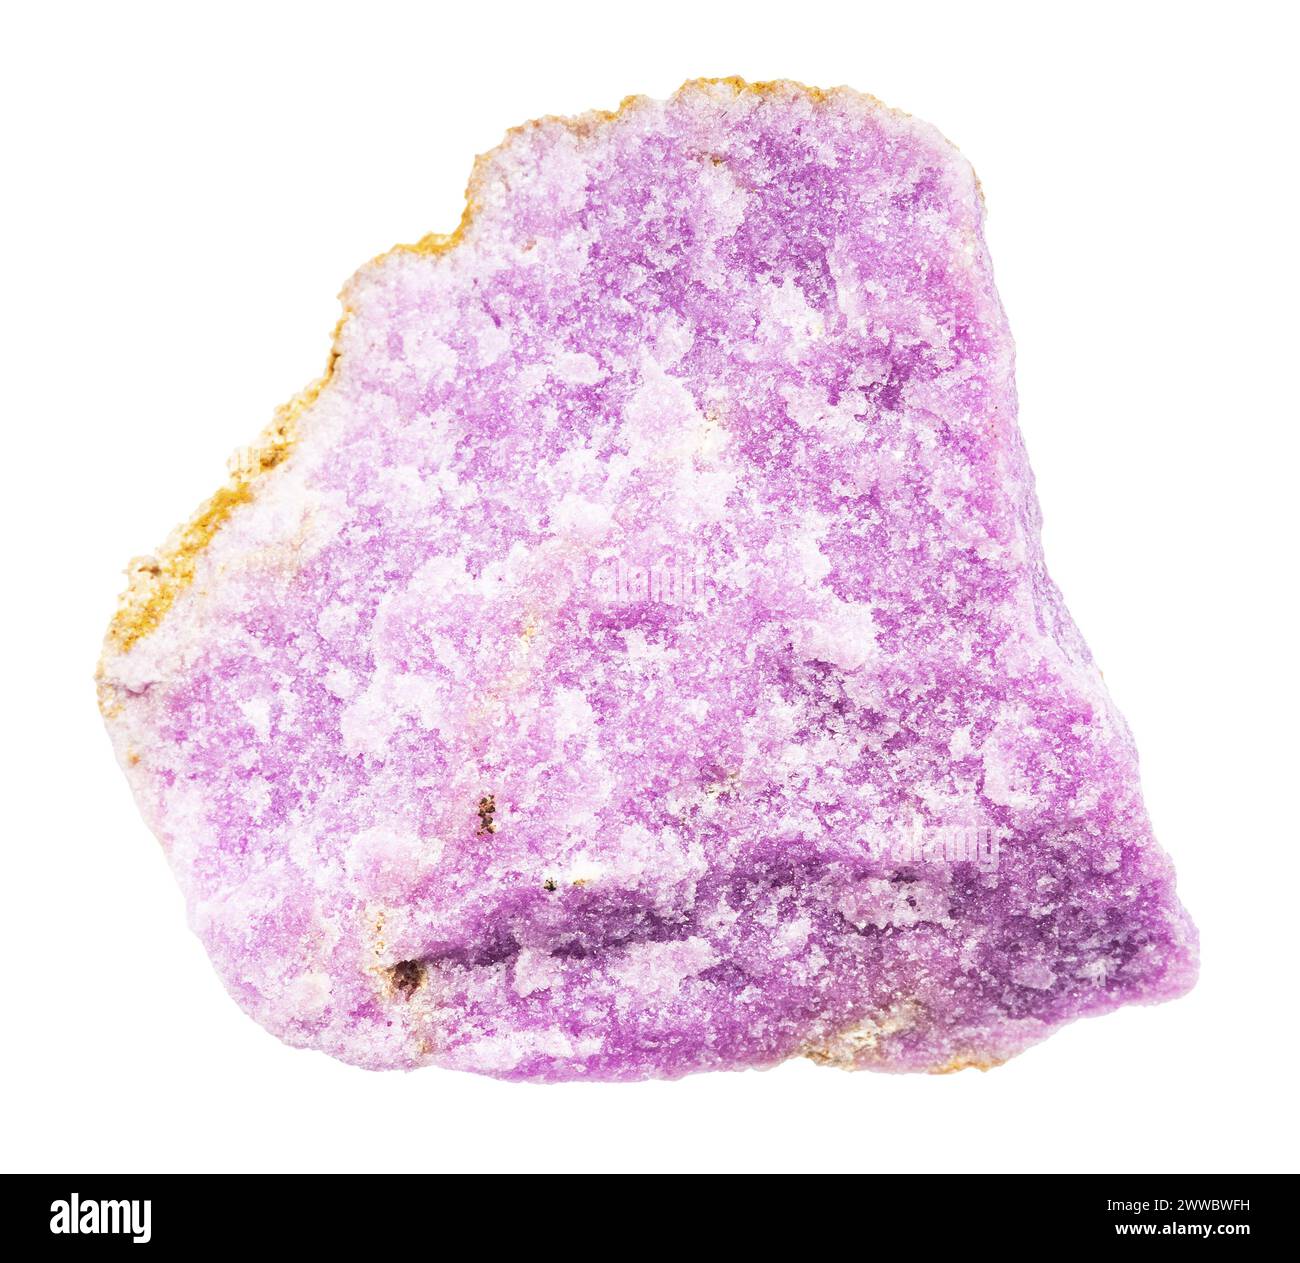 Primo piano del campione di pietra naturale proveniente dalla raccolta geologica - minerale di fosfosiderite non lucidato isolato su sfondo bianco dalle Ande cilene Foto Stock